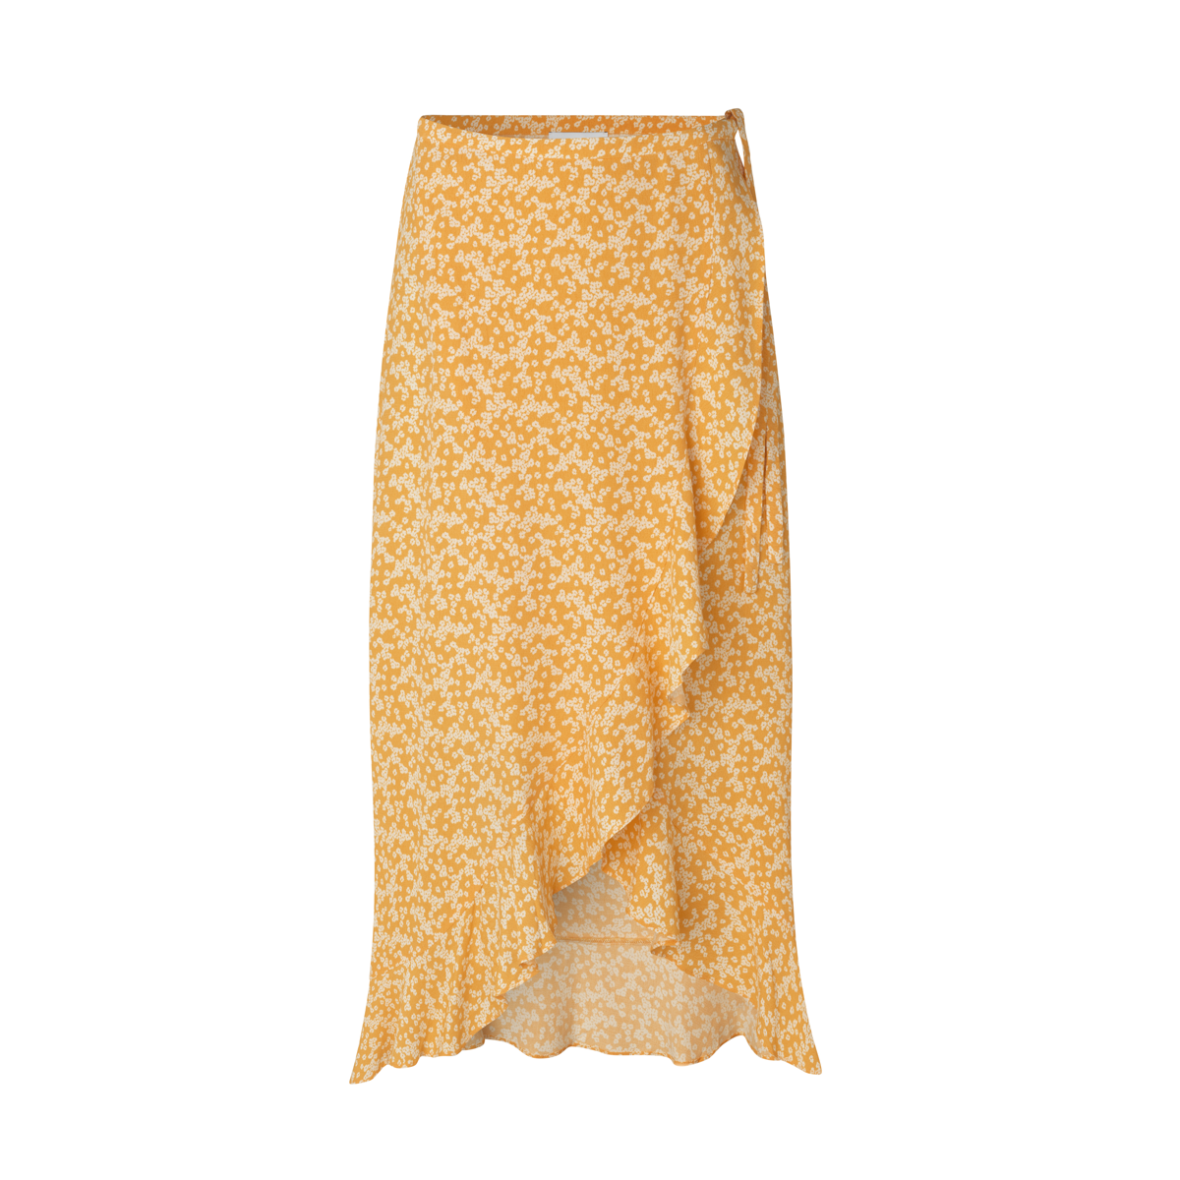 Samsøe & Samsøe nederdel Limon wrap - Shop online